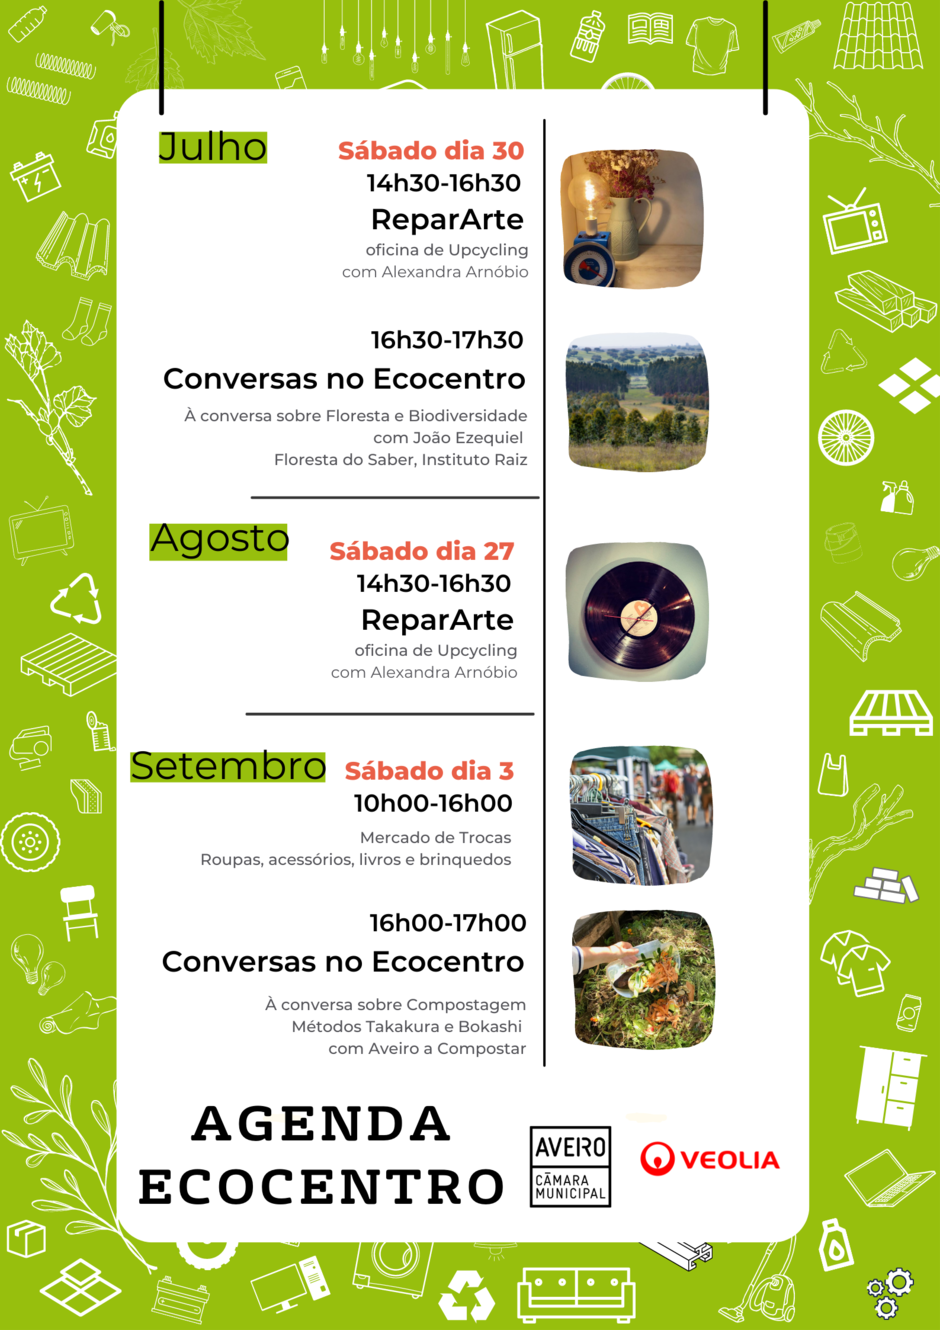 Agenda Ecocentro de Aveiro - julho, agosto, setembro